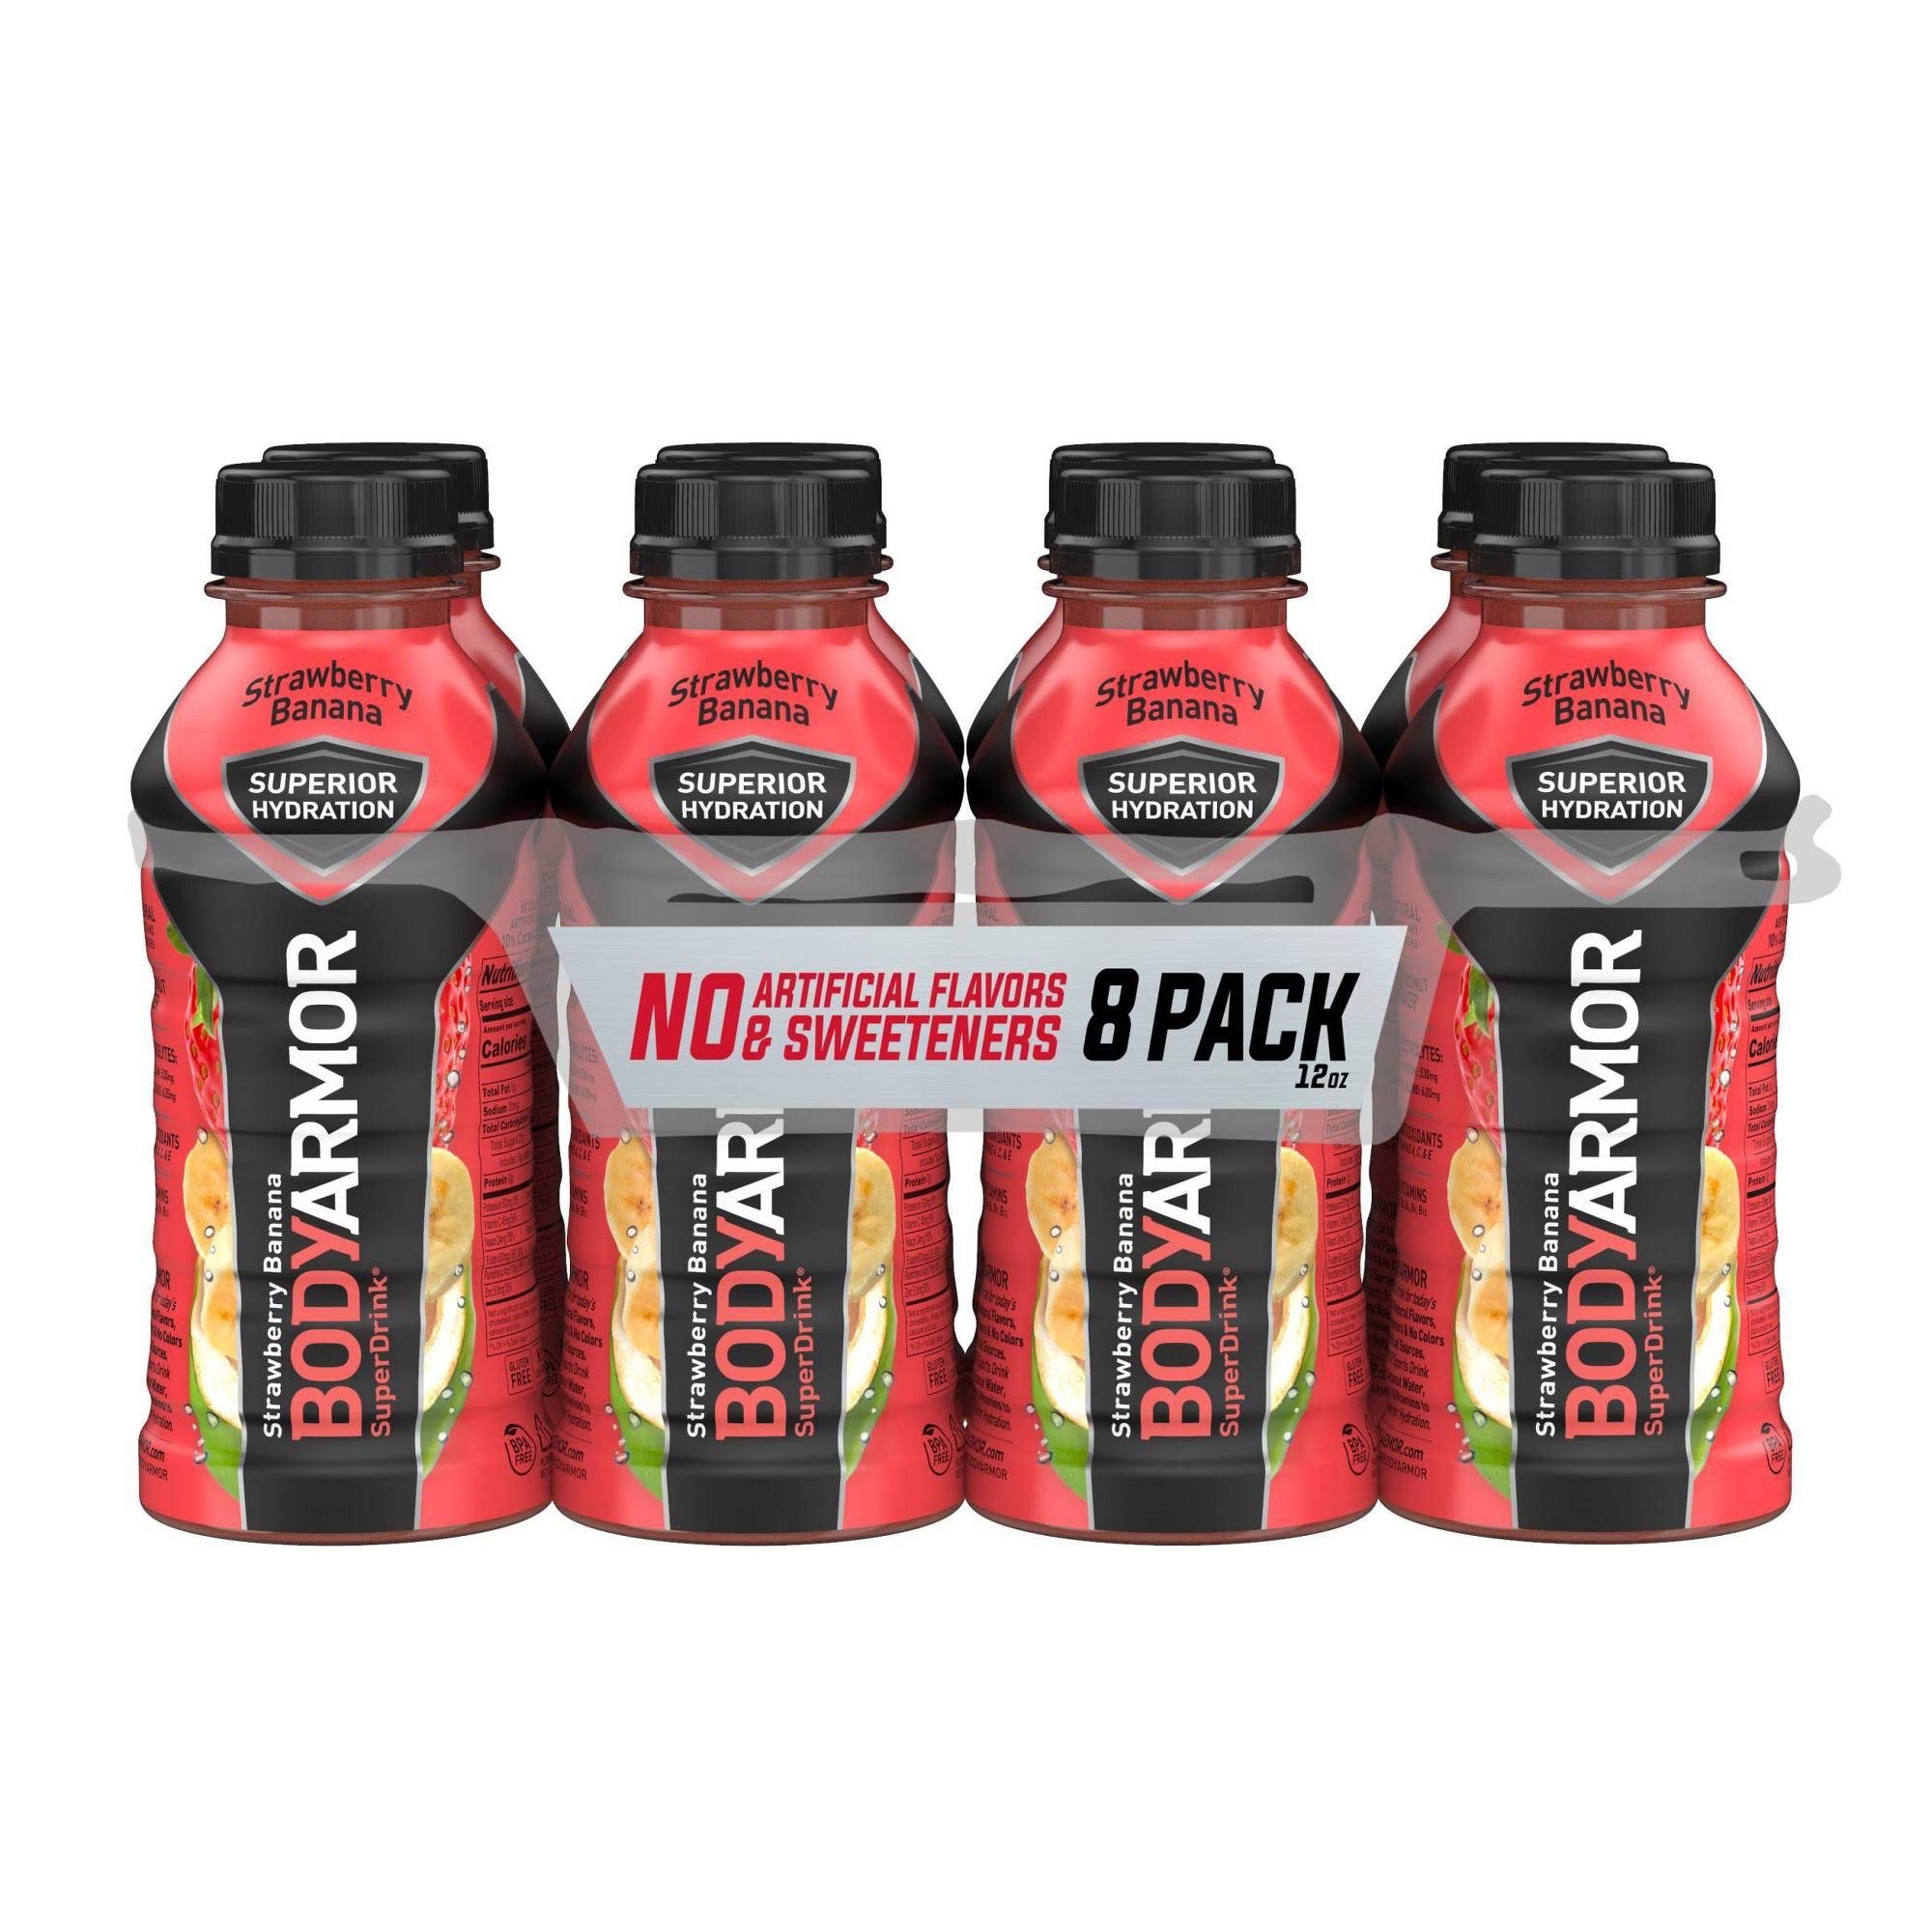 Body Armor Super Drink, Strawberry Banana - 8 pack, 12 fl oz bottles